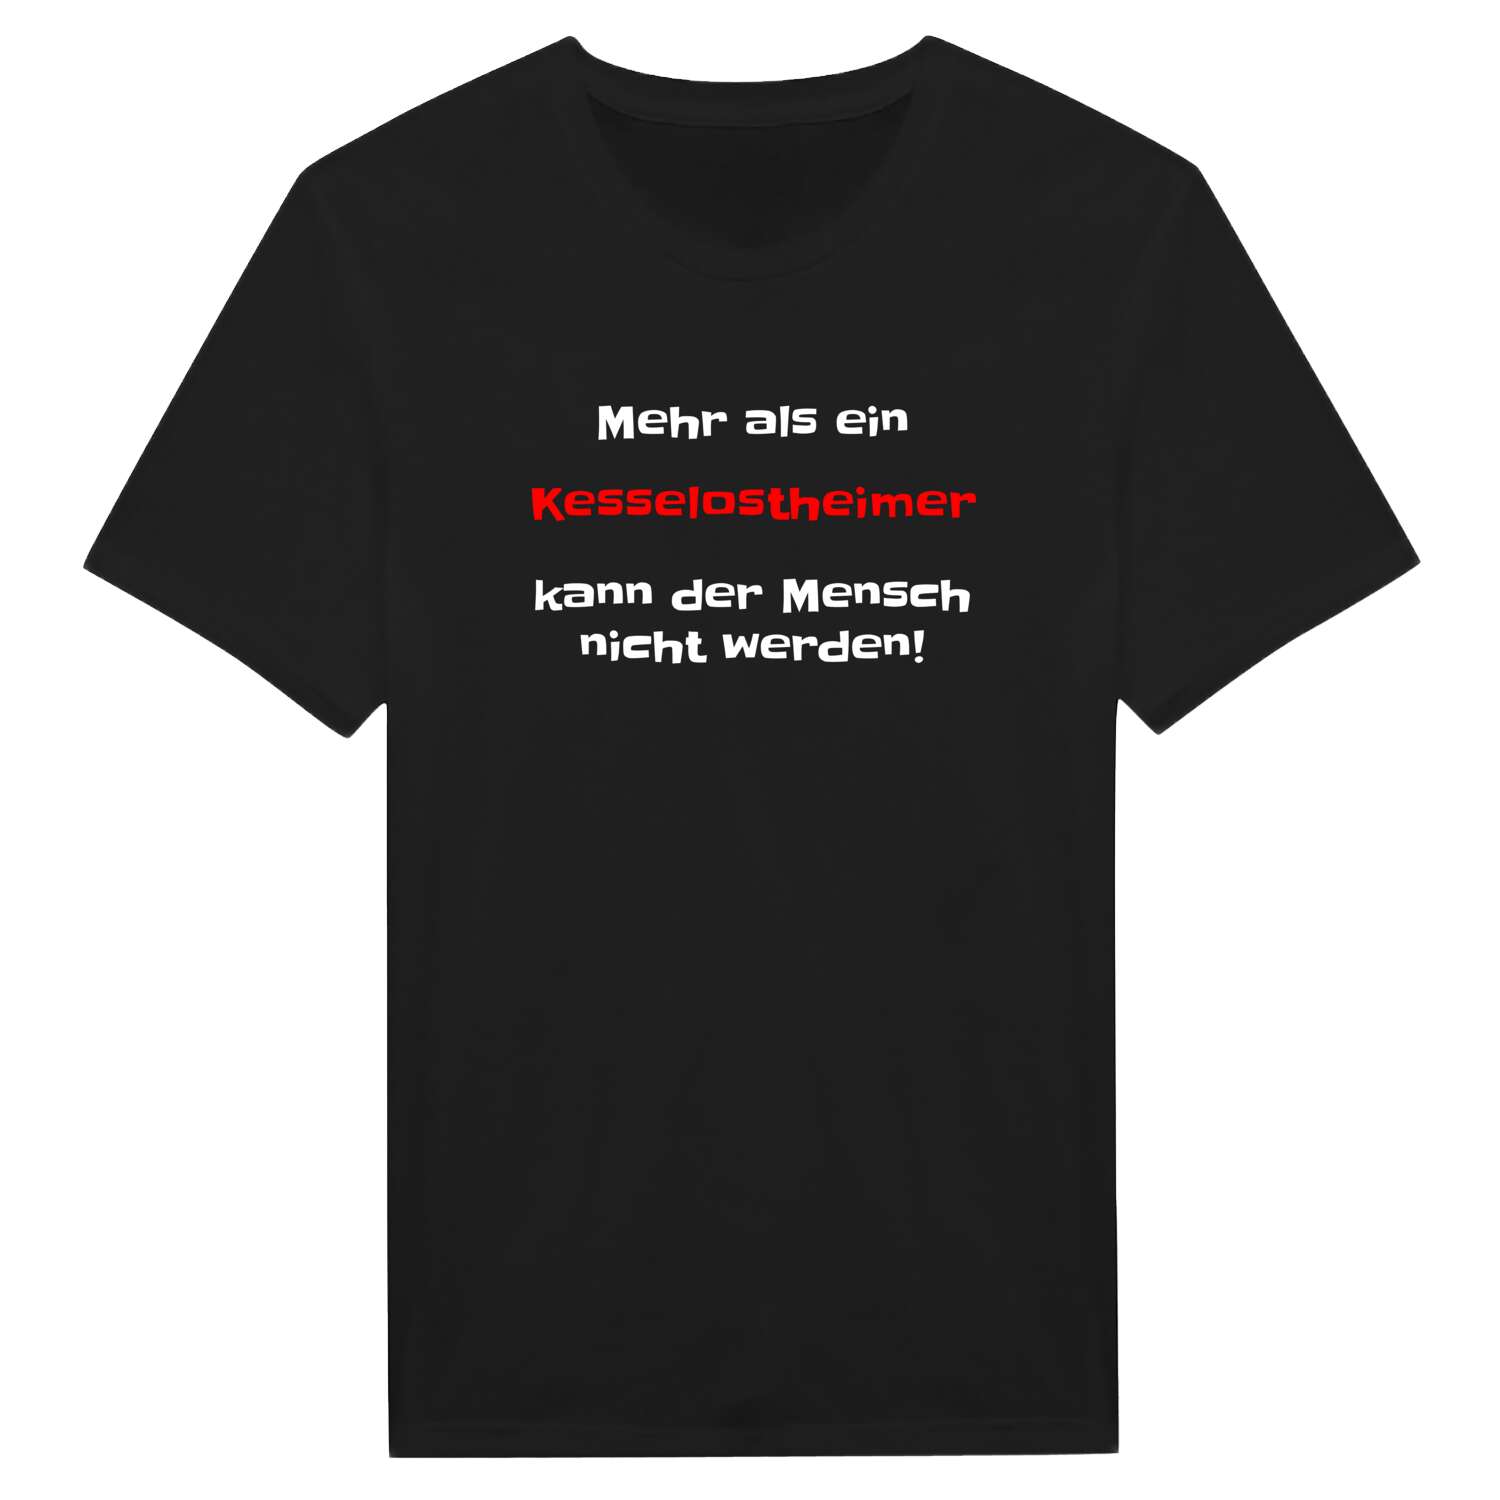 Kesselostheim T-Shirt »Mehr als ein«